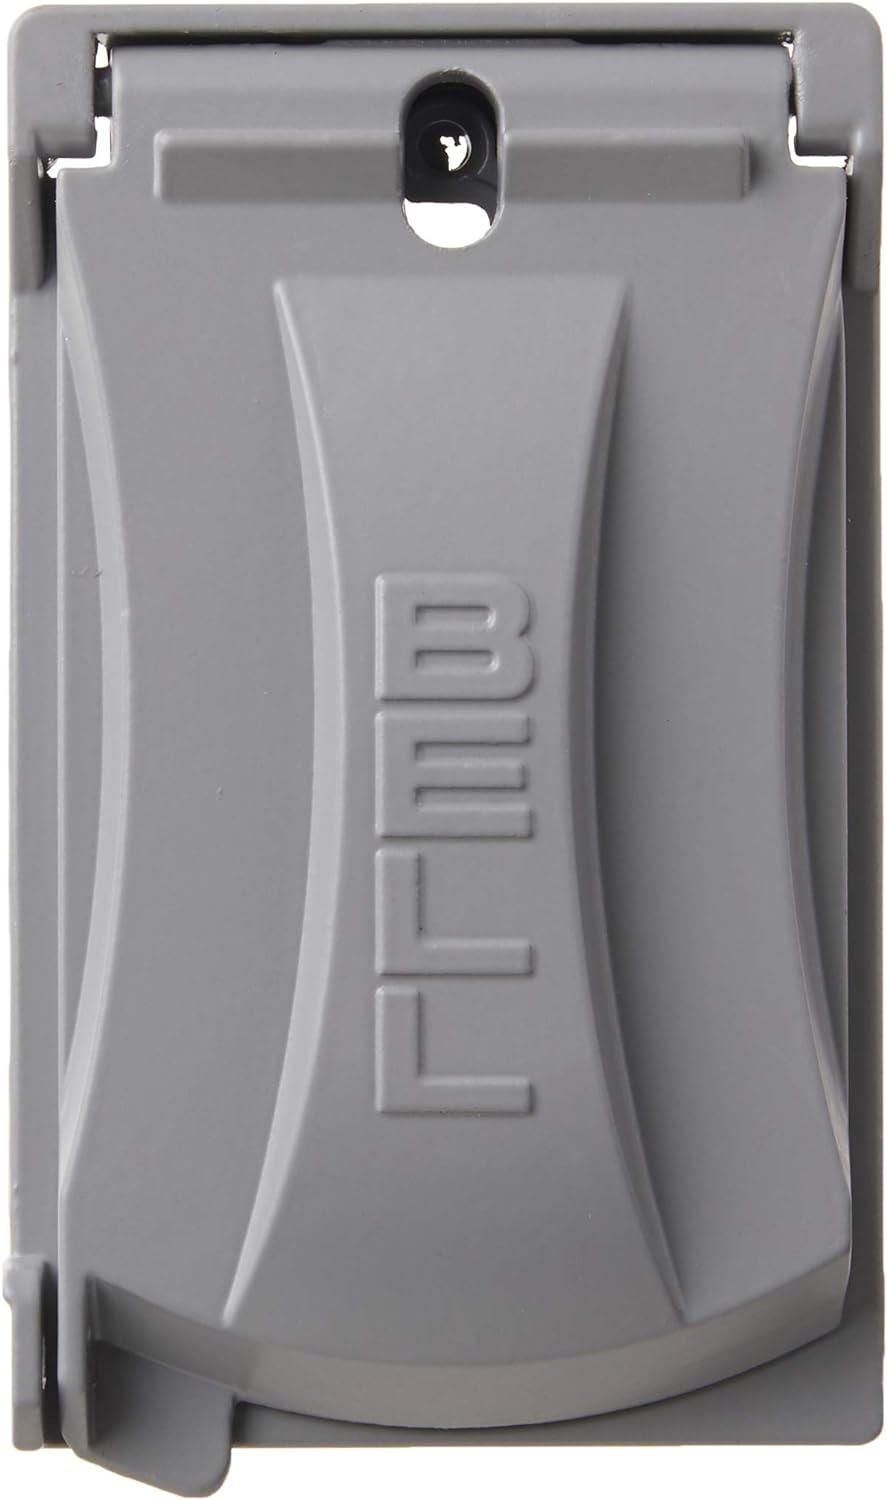 Hubbell Bell Single-Gang Weatherproof Heavy Duty Universal Flip Cover (Gray)